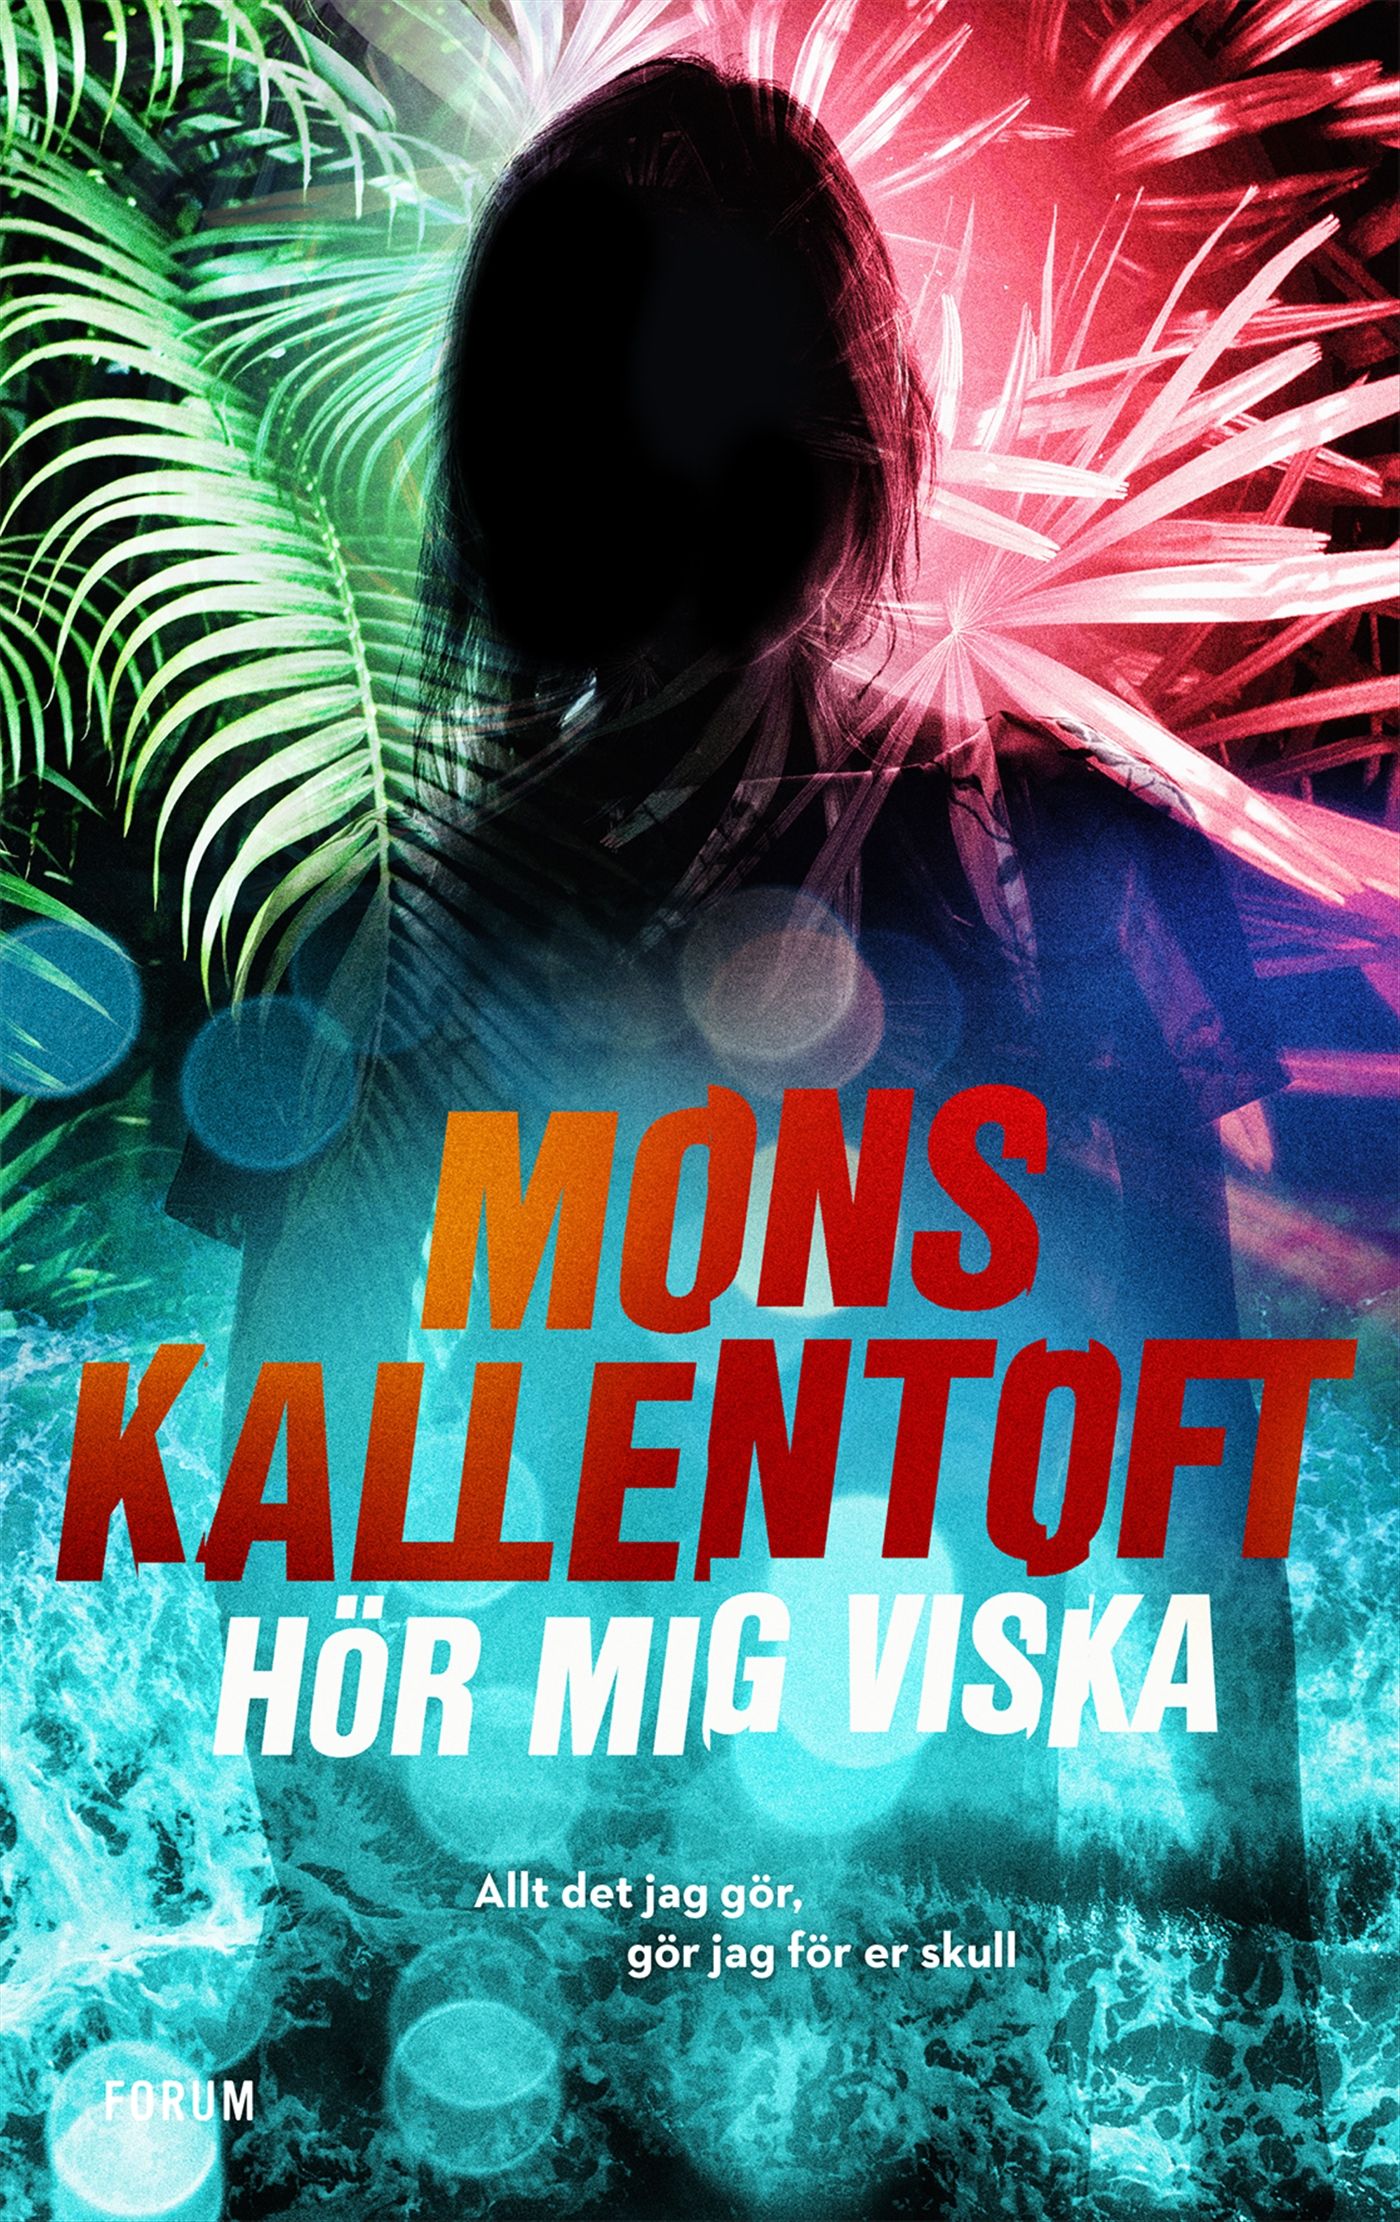 Hör mig viska, e-bog af Mons Kallentoft